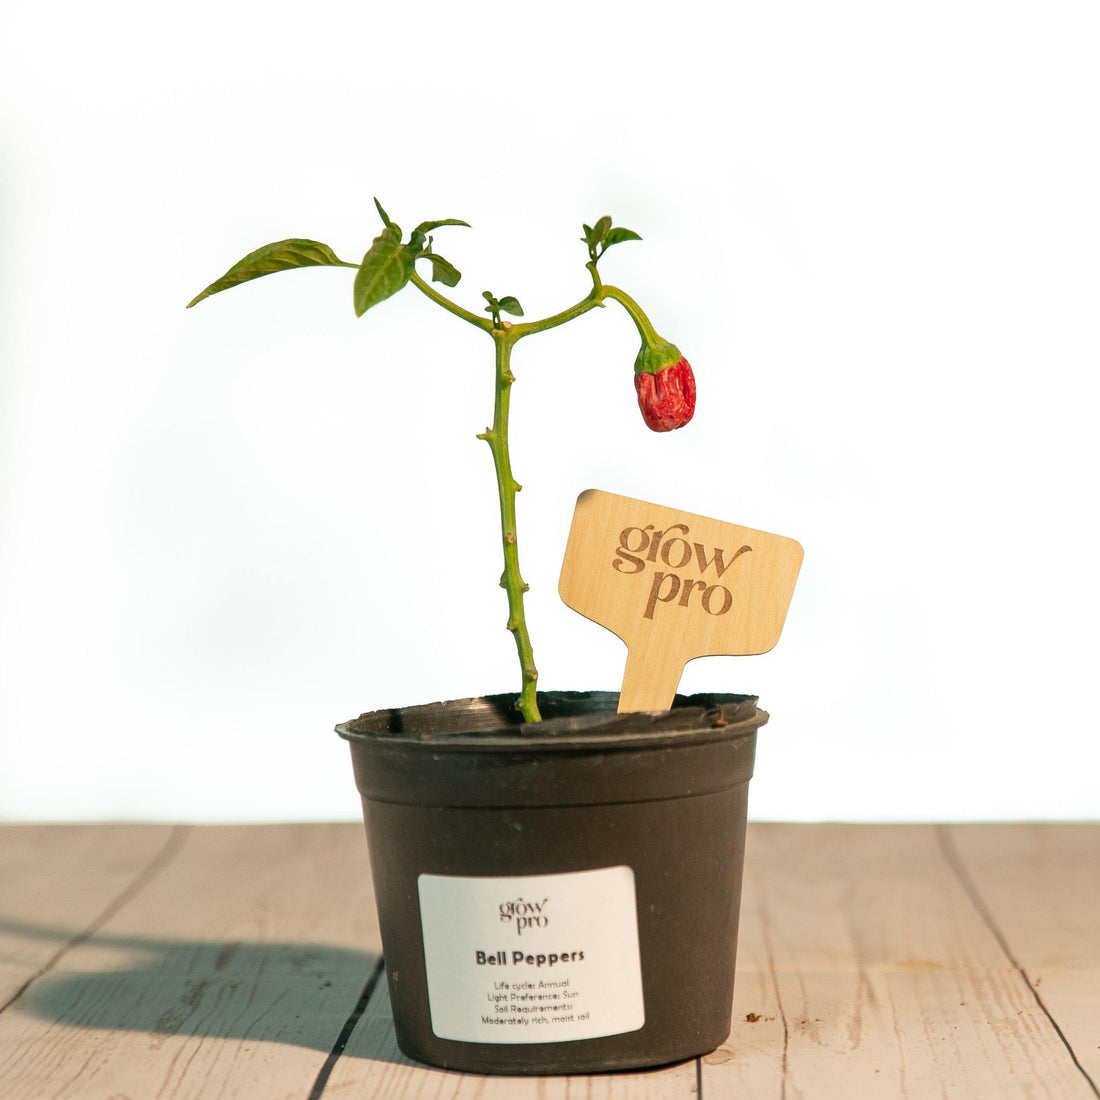 Bell Pepper Seedling - Growpro Egypt